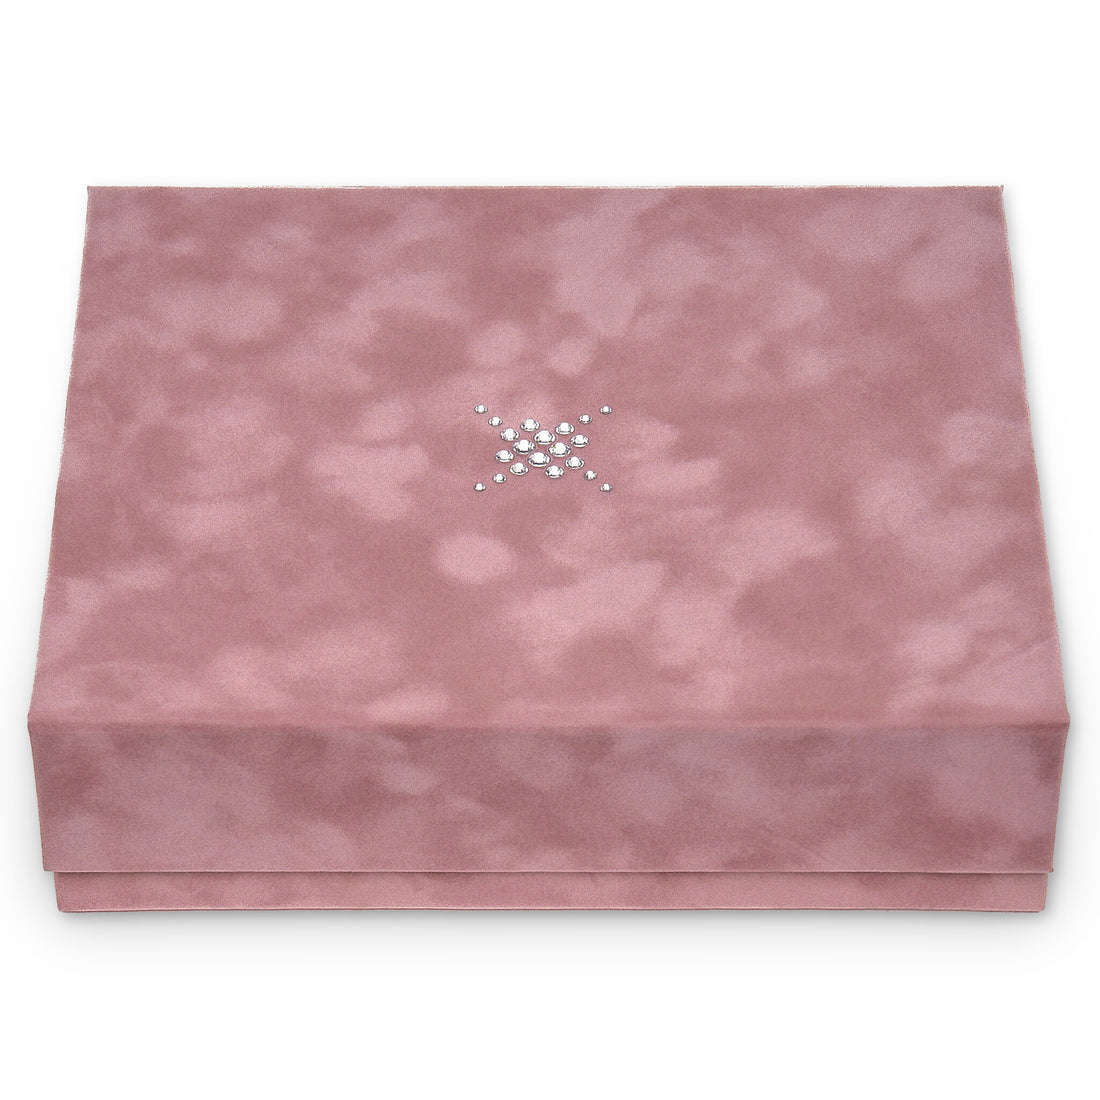 Caixa de jóias Nora crystalo / old rosé